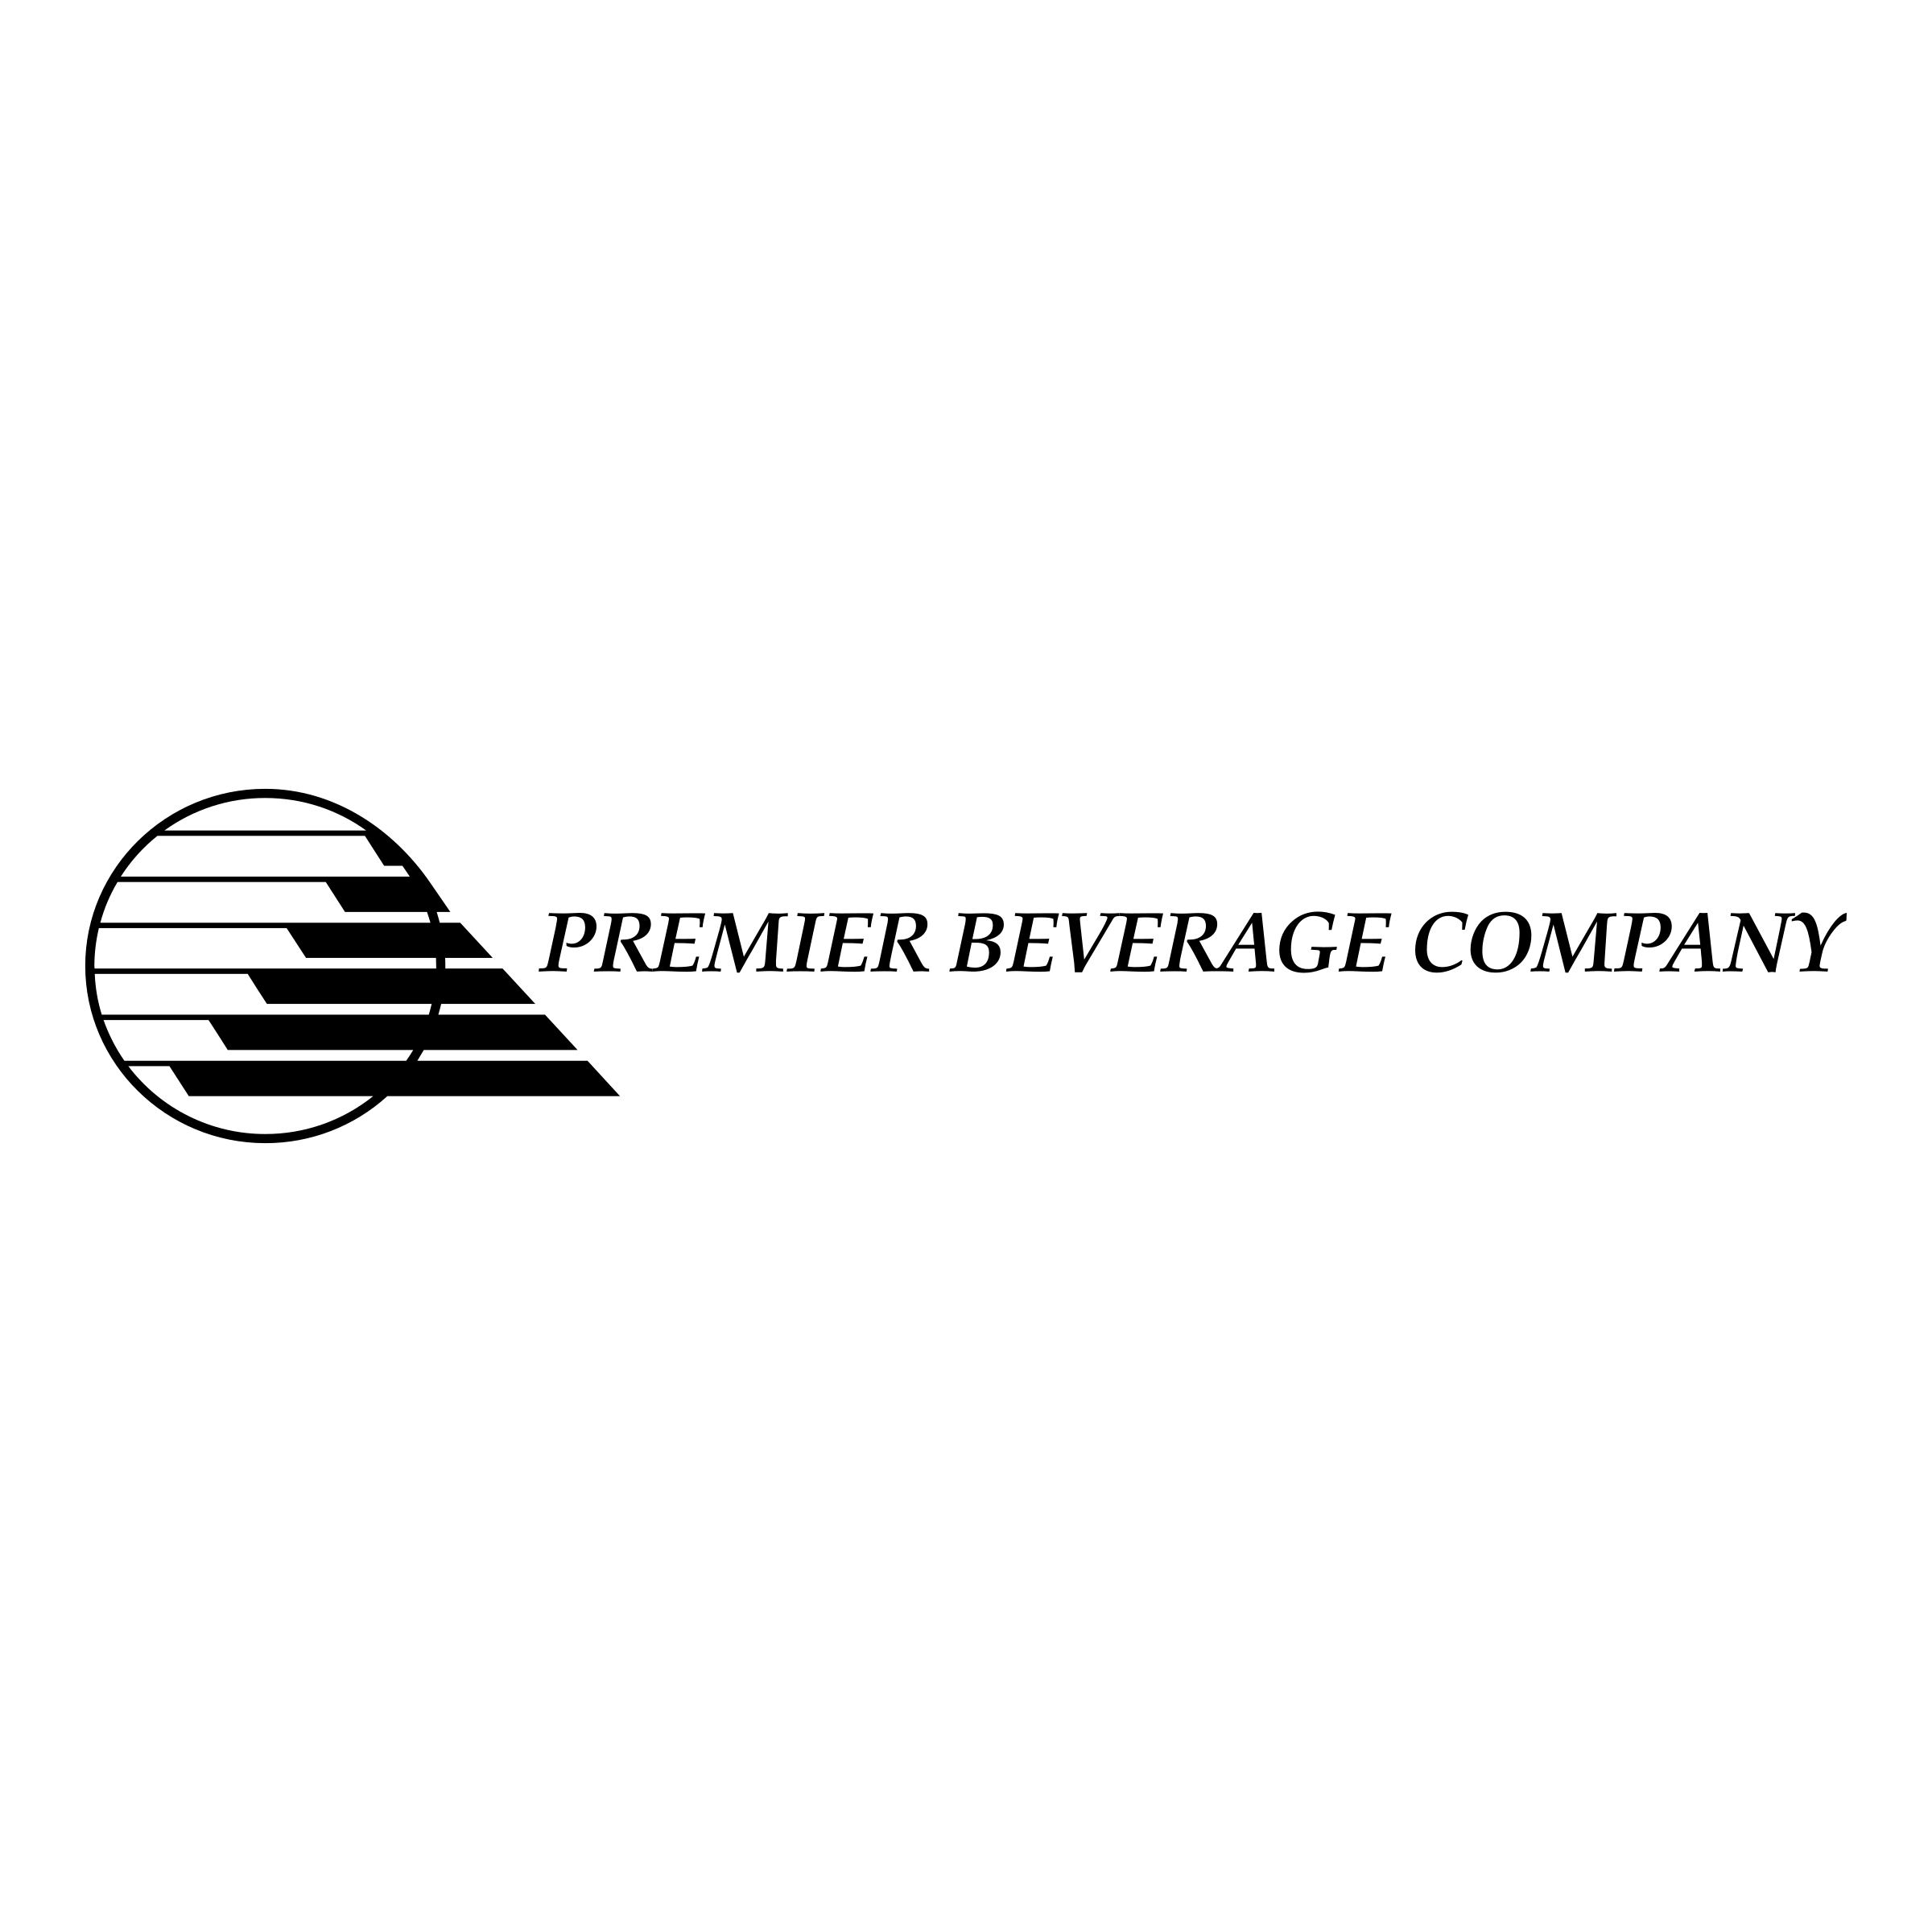 Beverage Manufacturer Logo - Premier Beverage Company Logo PNG Transparent & SVG Vector